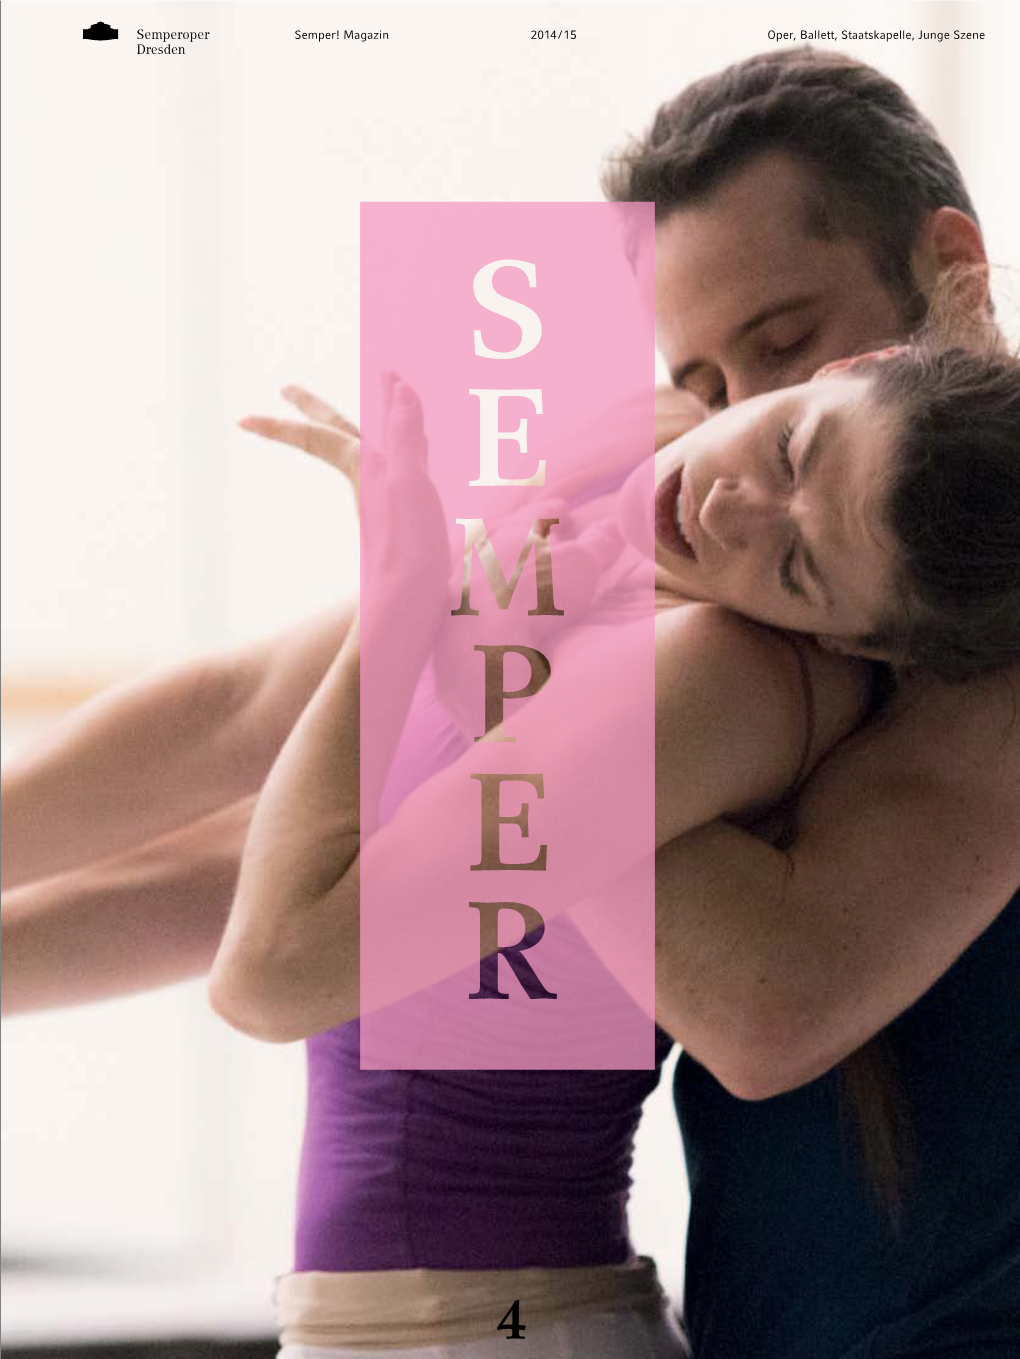 Oper, Ballett, Staatskapelle, Junge Szene 2014 / 15 Semper! Magazin